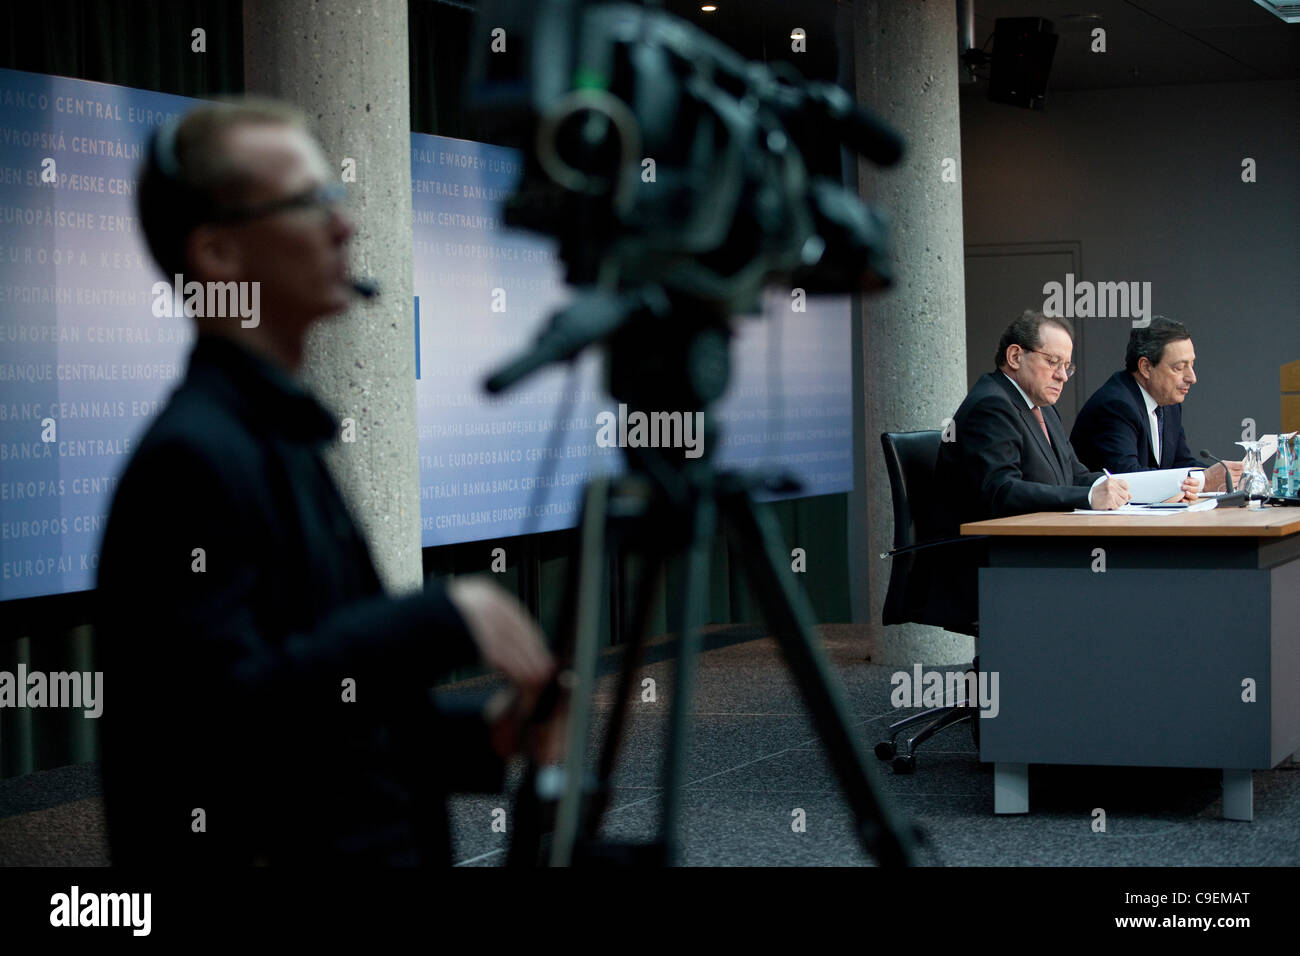 Banque centrale européenne, Francfort, Allemagne. 08-12-2011 Photo montre Mario Draghi, Président de la Banque centrale européenne. La BCE a annoncé des mesures d'urgence pour débloquer un style Lehman paralysie dans les marchés financiers, que les banques allemandes étaient plus fragiles que les marchés craignaient. Banque D'Images